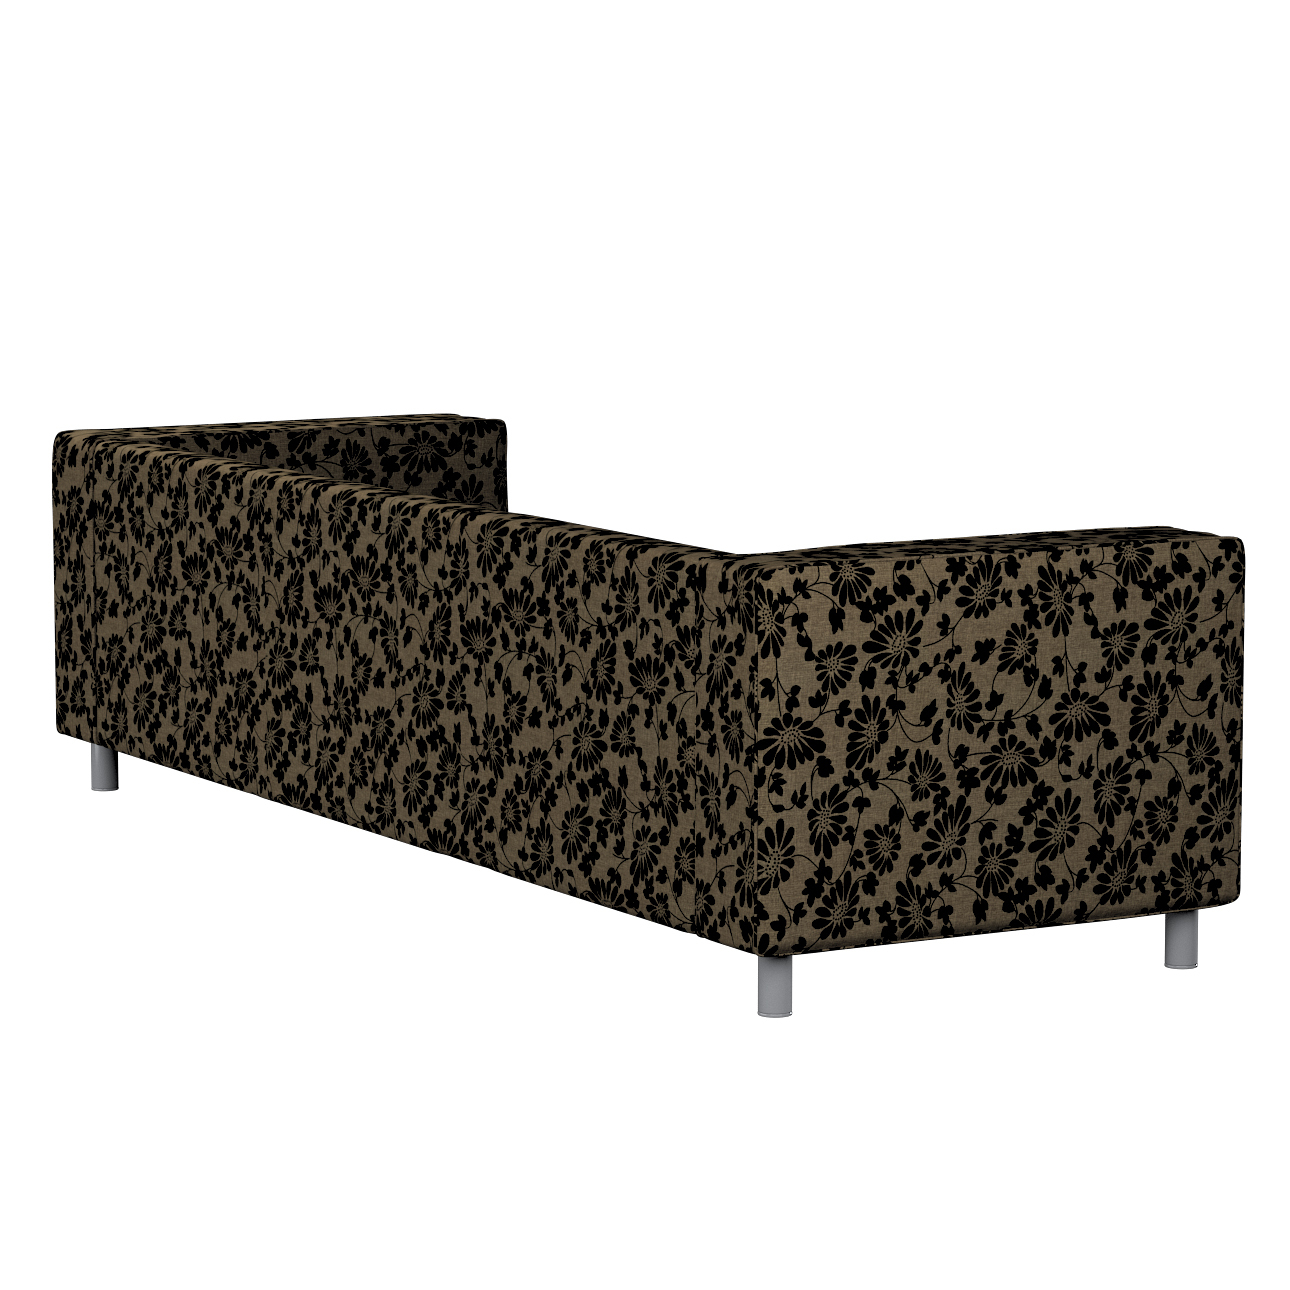 Bezug für Klippan 4-Sitzer Sofa, beige-schwarz, Bezug für Klippan 4-Sitzer, günstig online kaufen